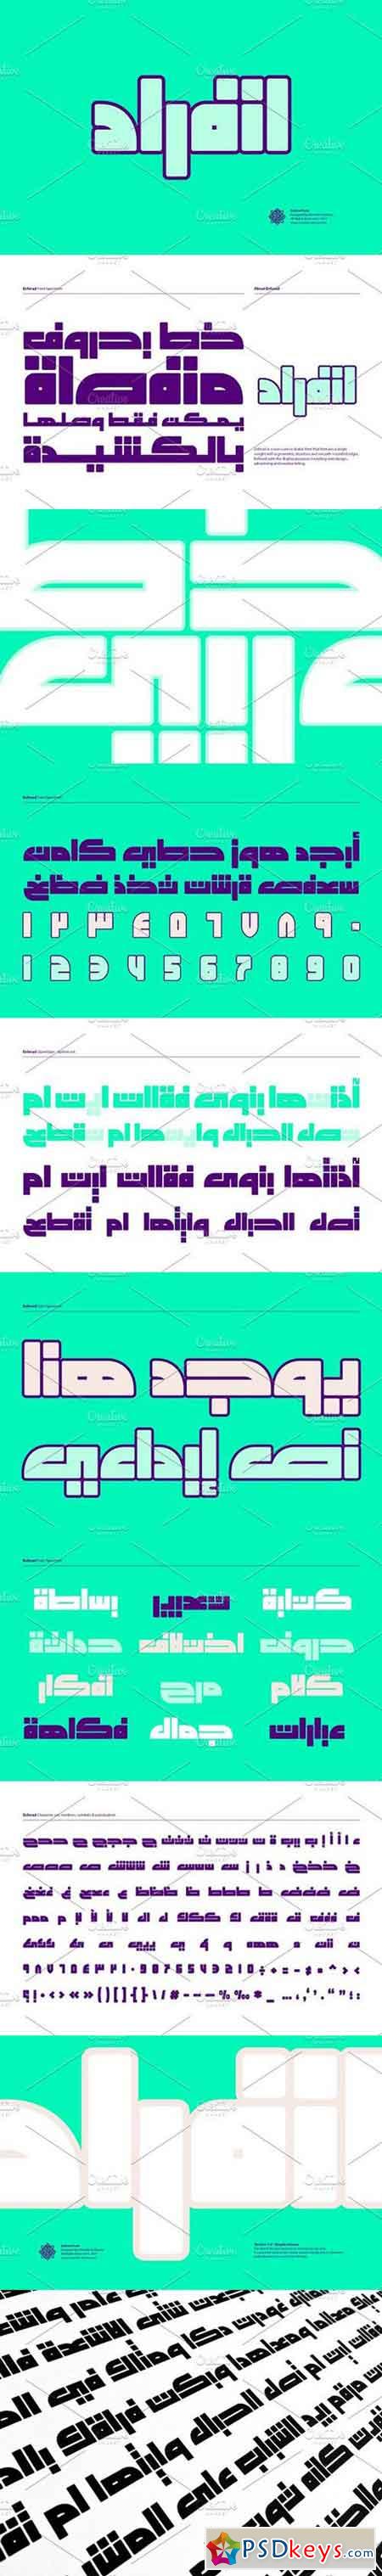 Enferad, Arabic Font 1200247